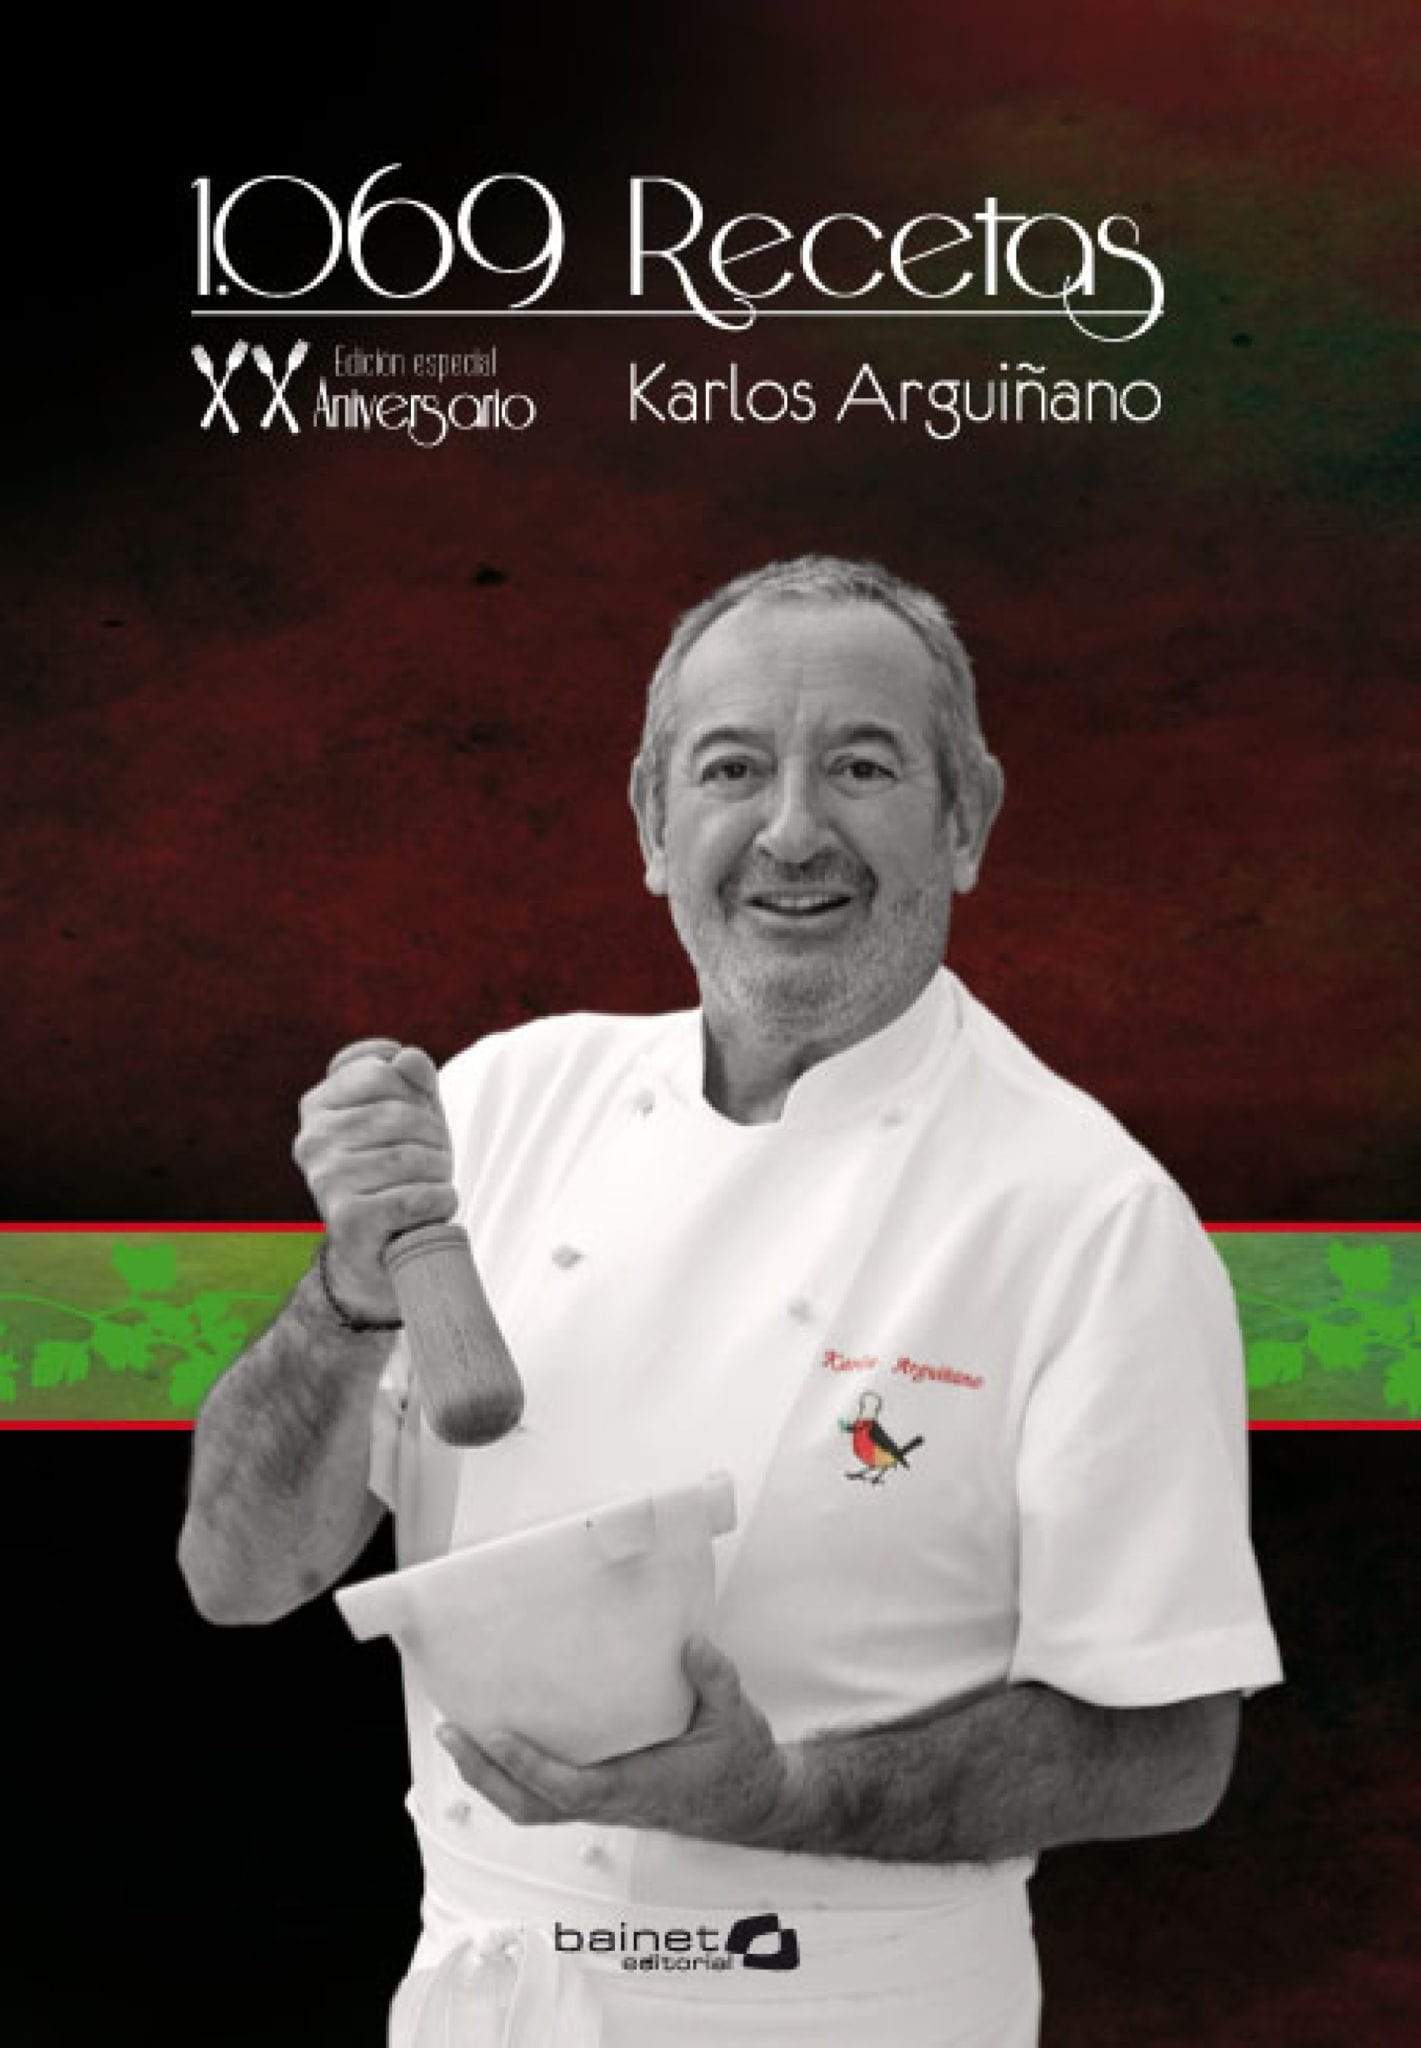 Especial Regalo: Libro de Karlos Arguiñano firmado + cuchillo con